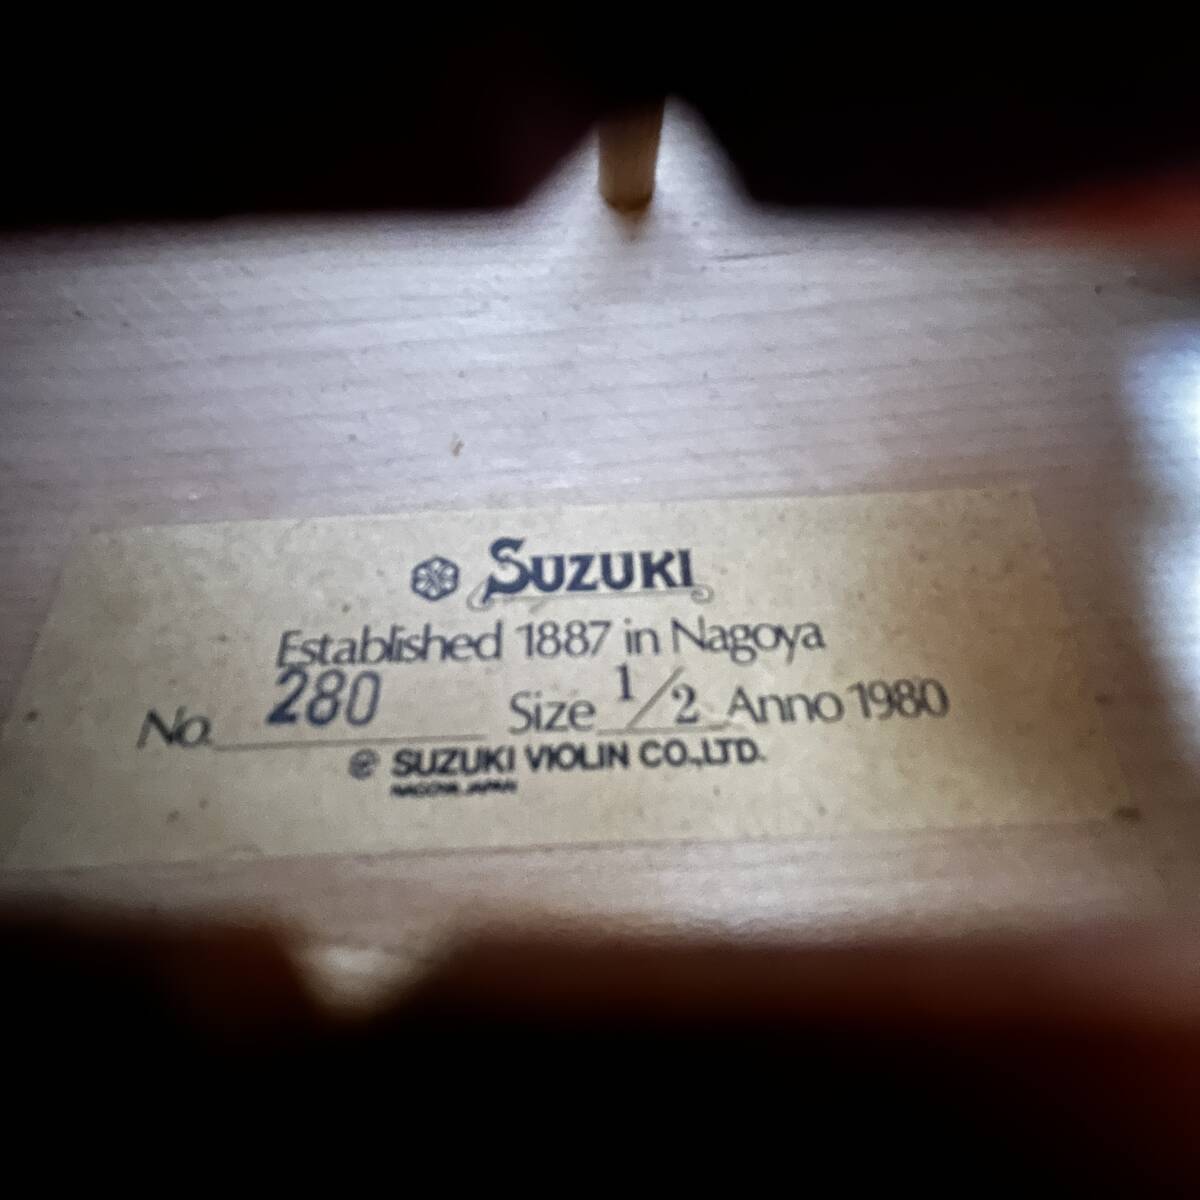 鈴木バイオリン No.280 1/2 Anno1980 ハードケース付き SUZUKI製弓付属 弦楽器/120サイズの画像3